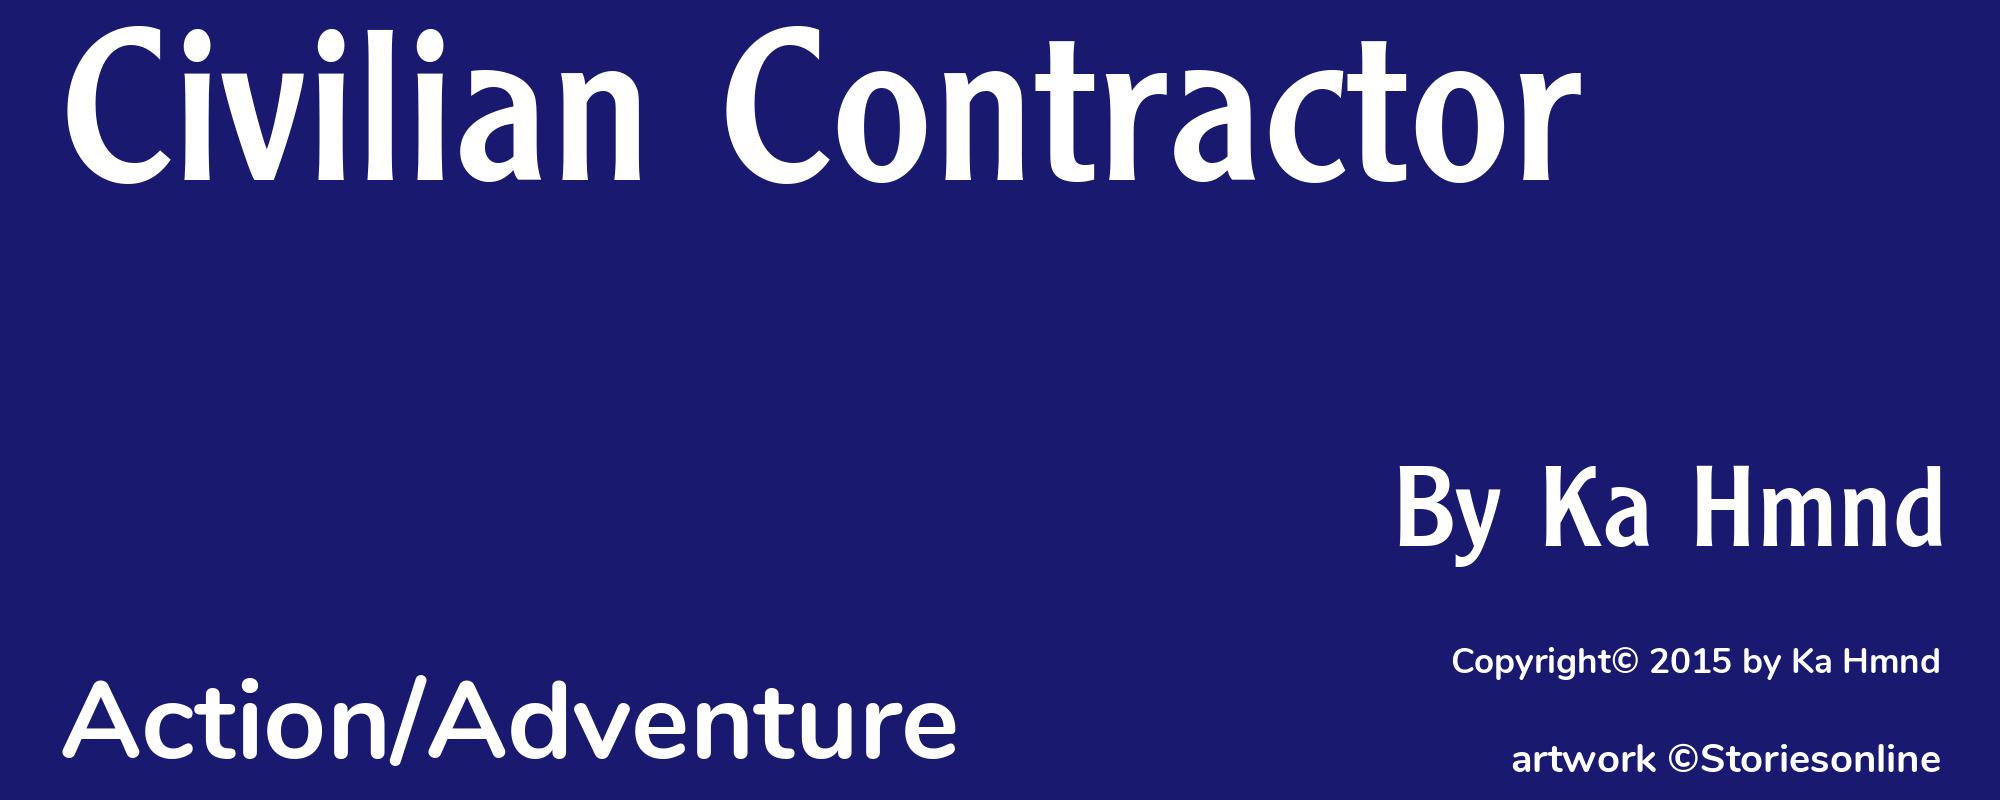 Civilian Contractor - Cover